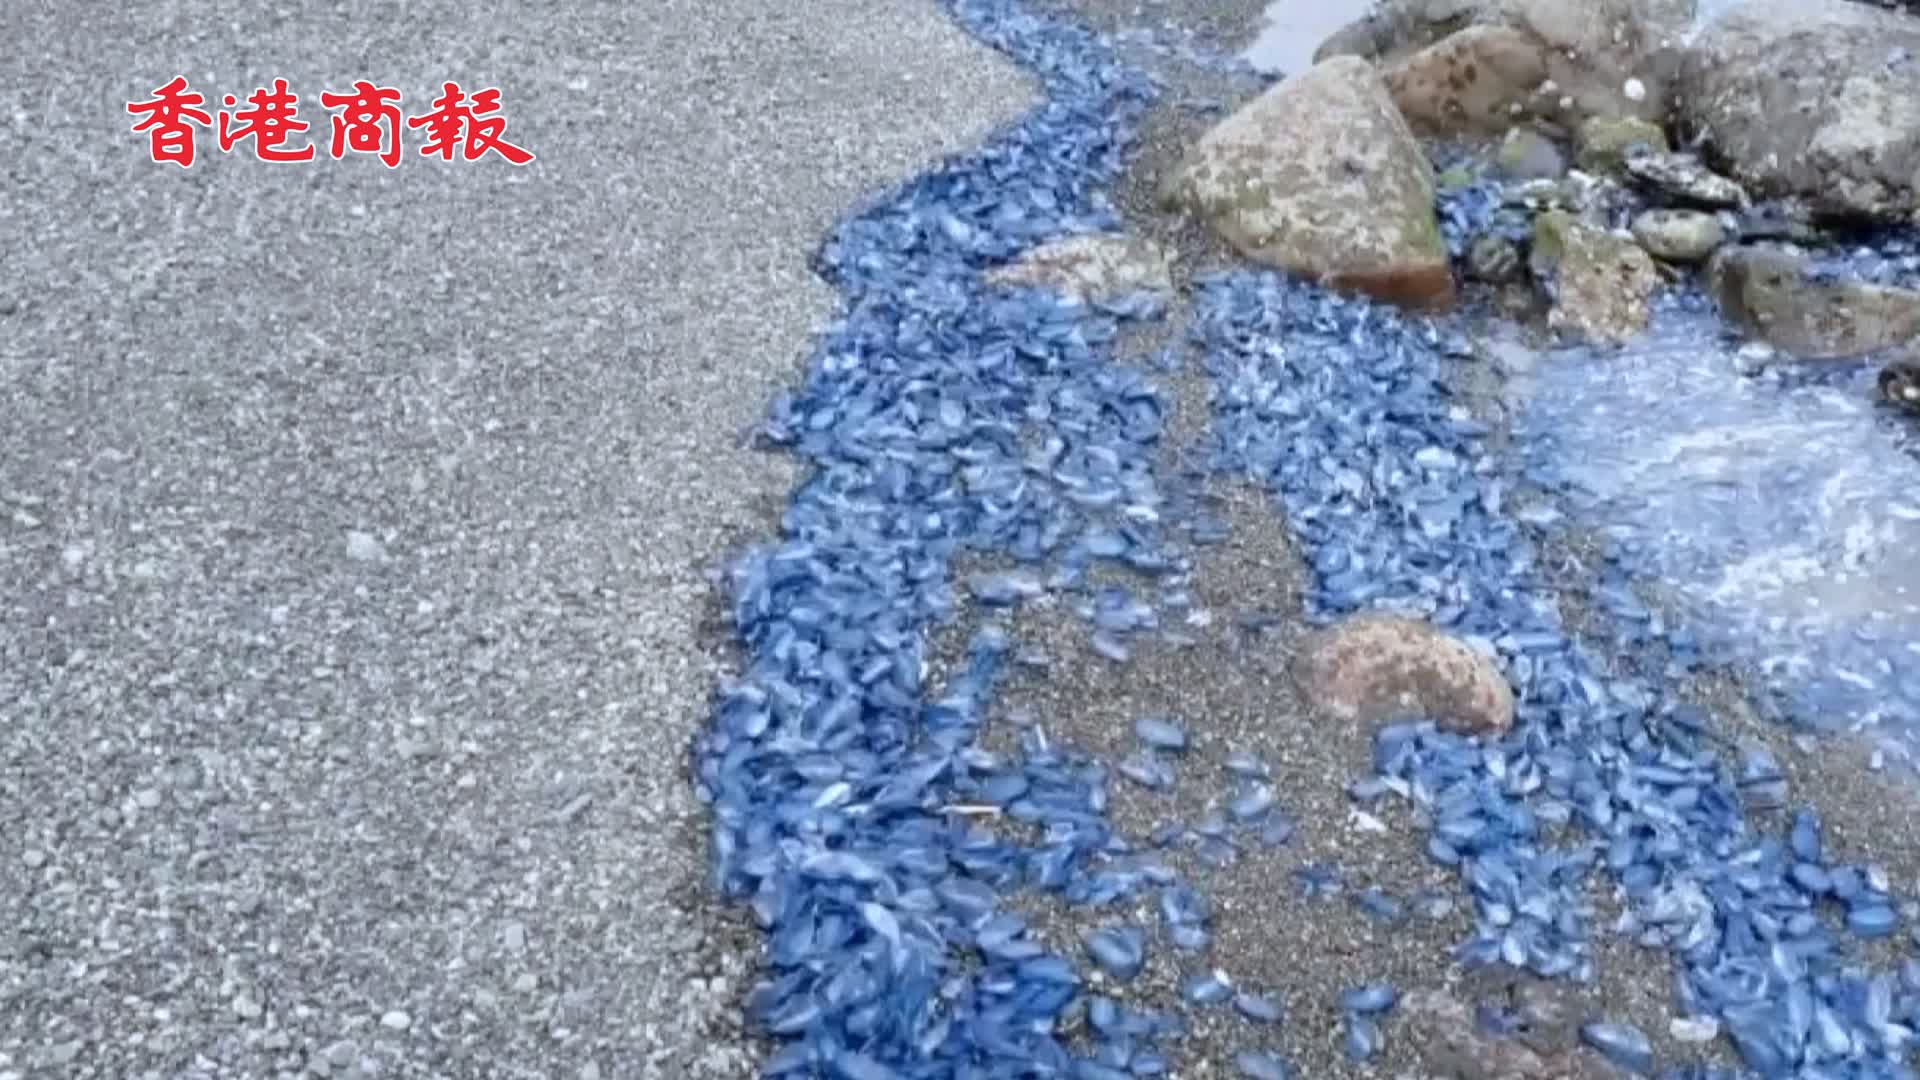 有片 | 日本鹿兒島海岸現大量有毒水母 被蟄或致休克